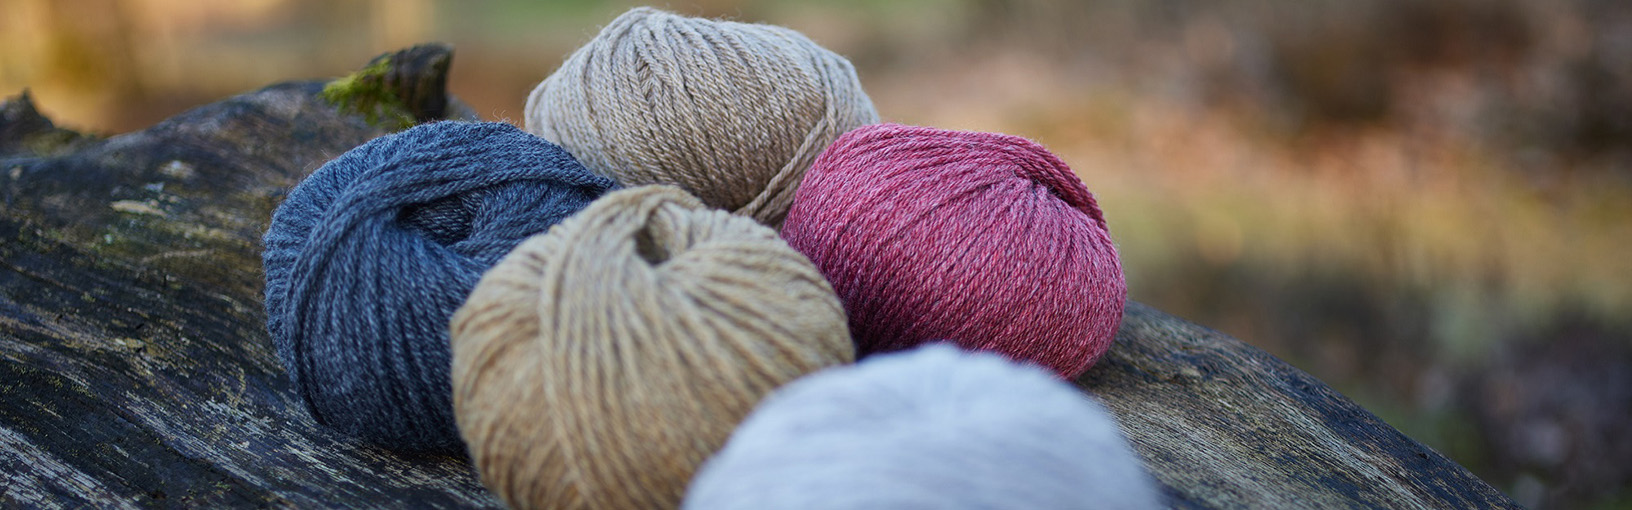 Garn af høj kvalitet til strikning, hækling og filtning LANA GROSSA<br> uld & garn | Sokkegarn | Hand-dyed